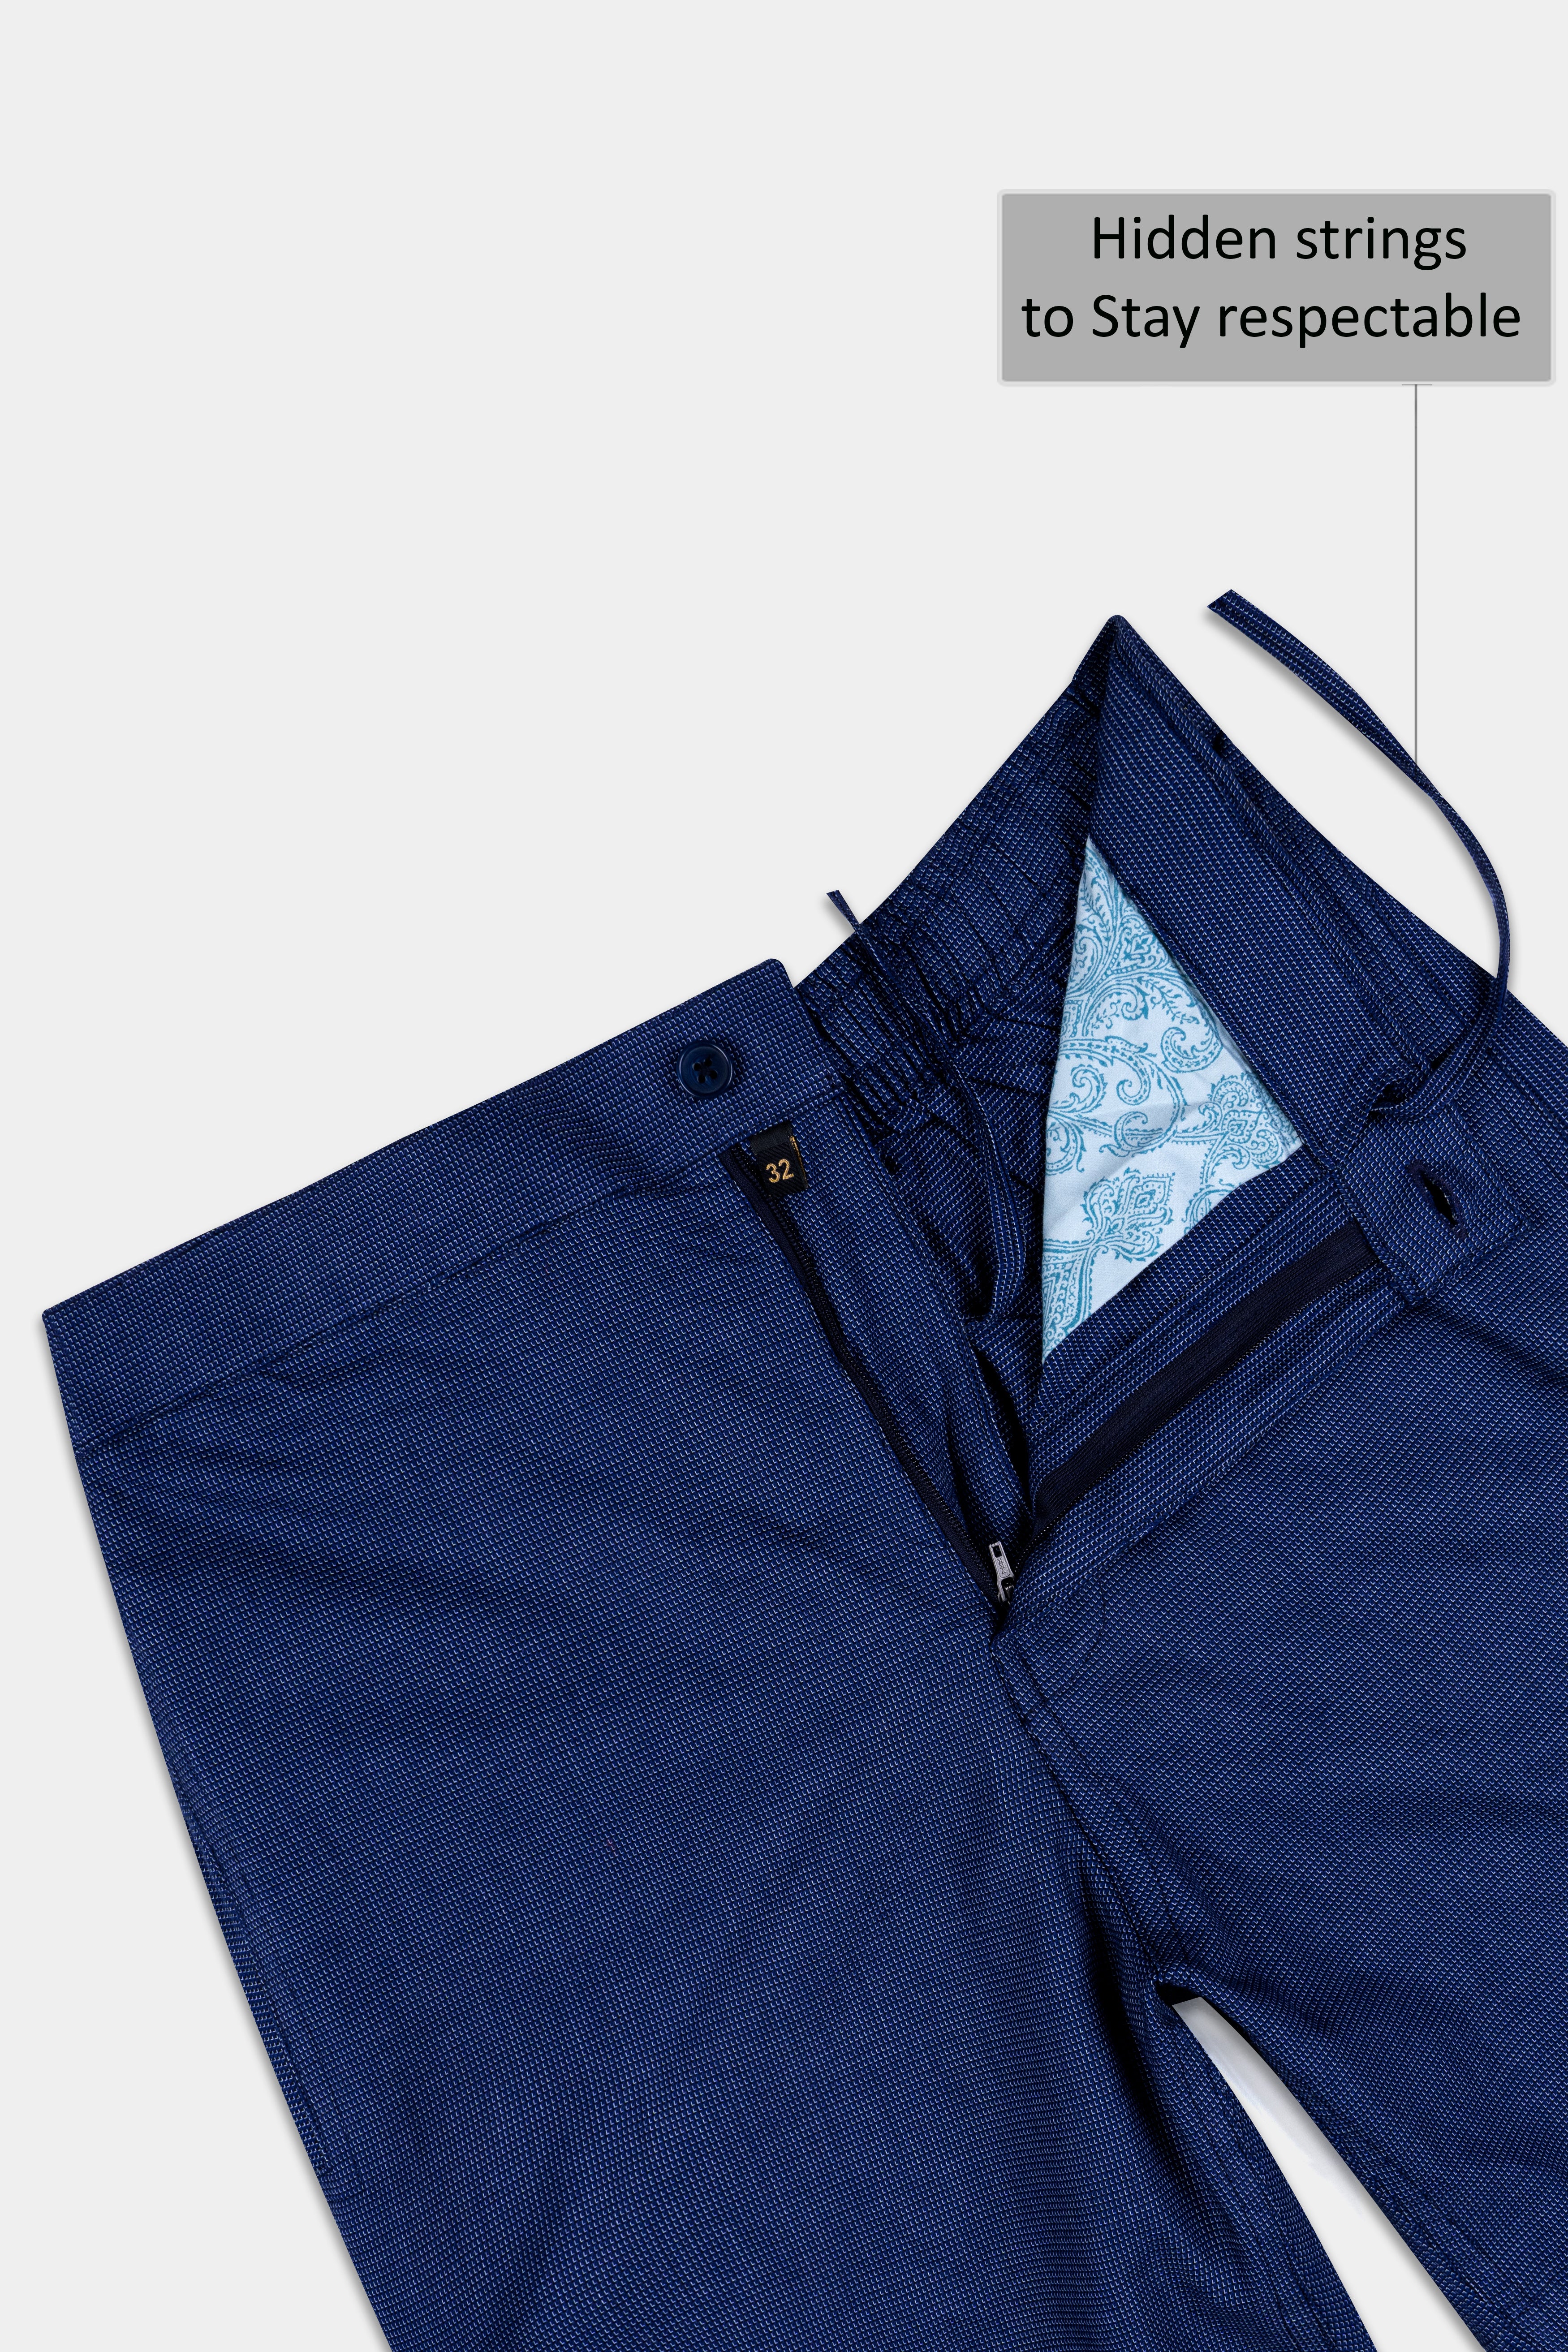 Cove Blue Dobby Textured Giza Cotton Shorts SR370-28, SR370-30, SR370-32, SR370-34, SR370-36, SR370-38, SR370-40, SR370-42, SR370-44